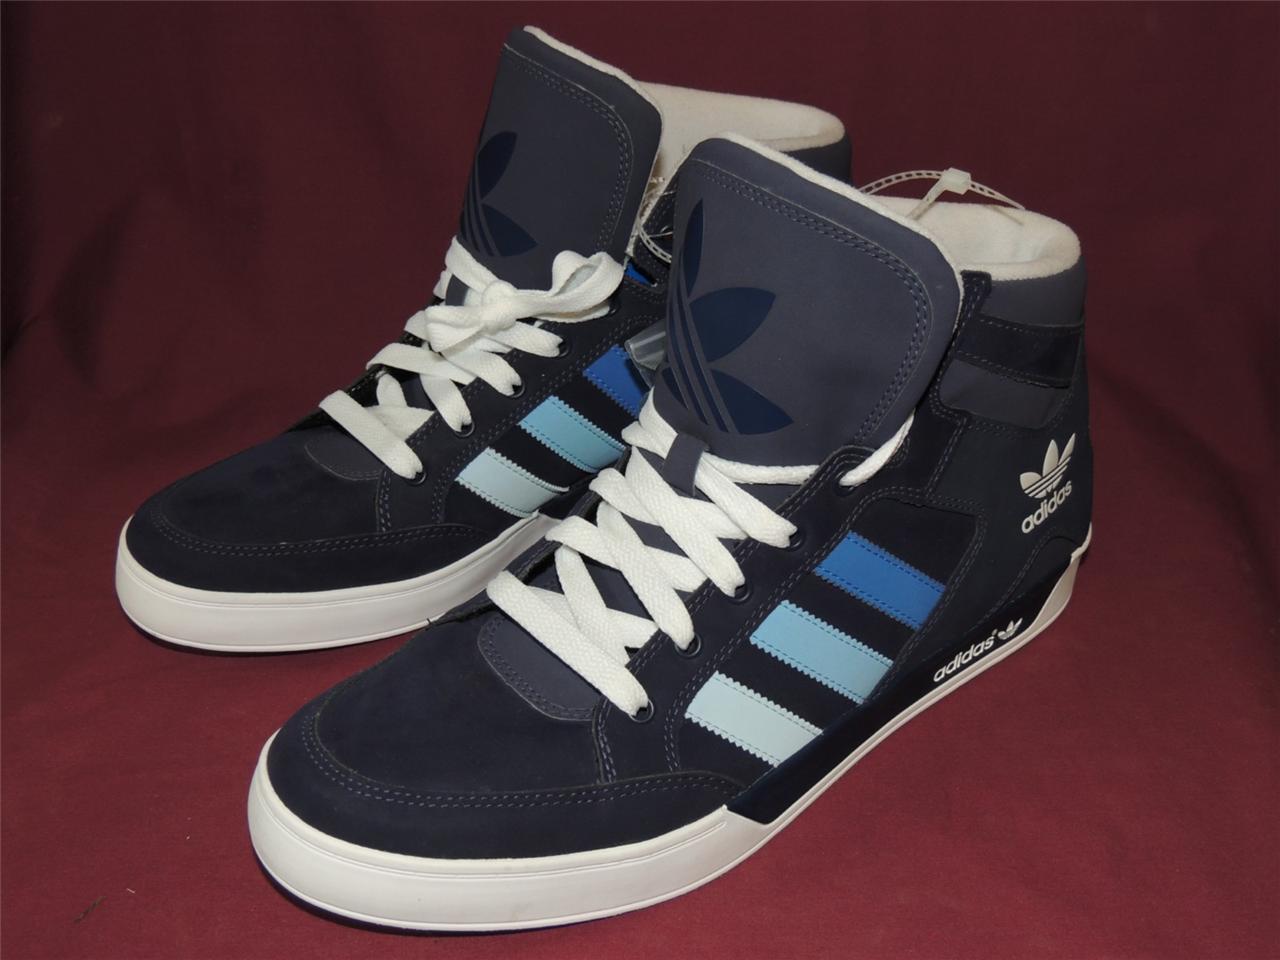 Adidas Originals Hard Court HI TOP G49079 Blue and White RARE! NEW! | eBay